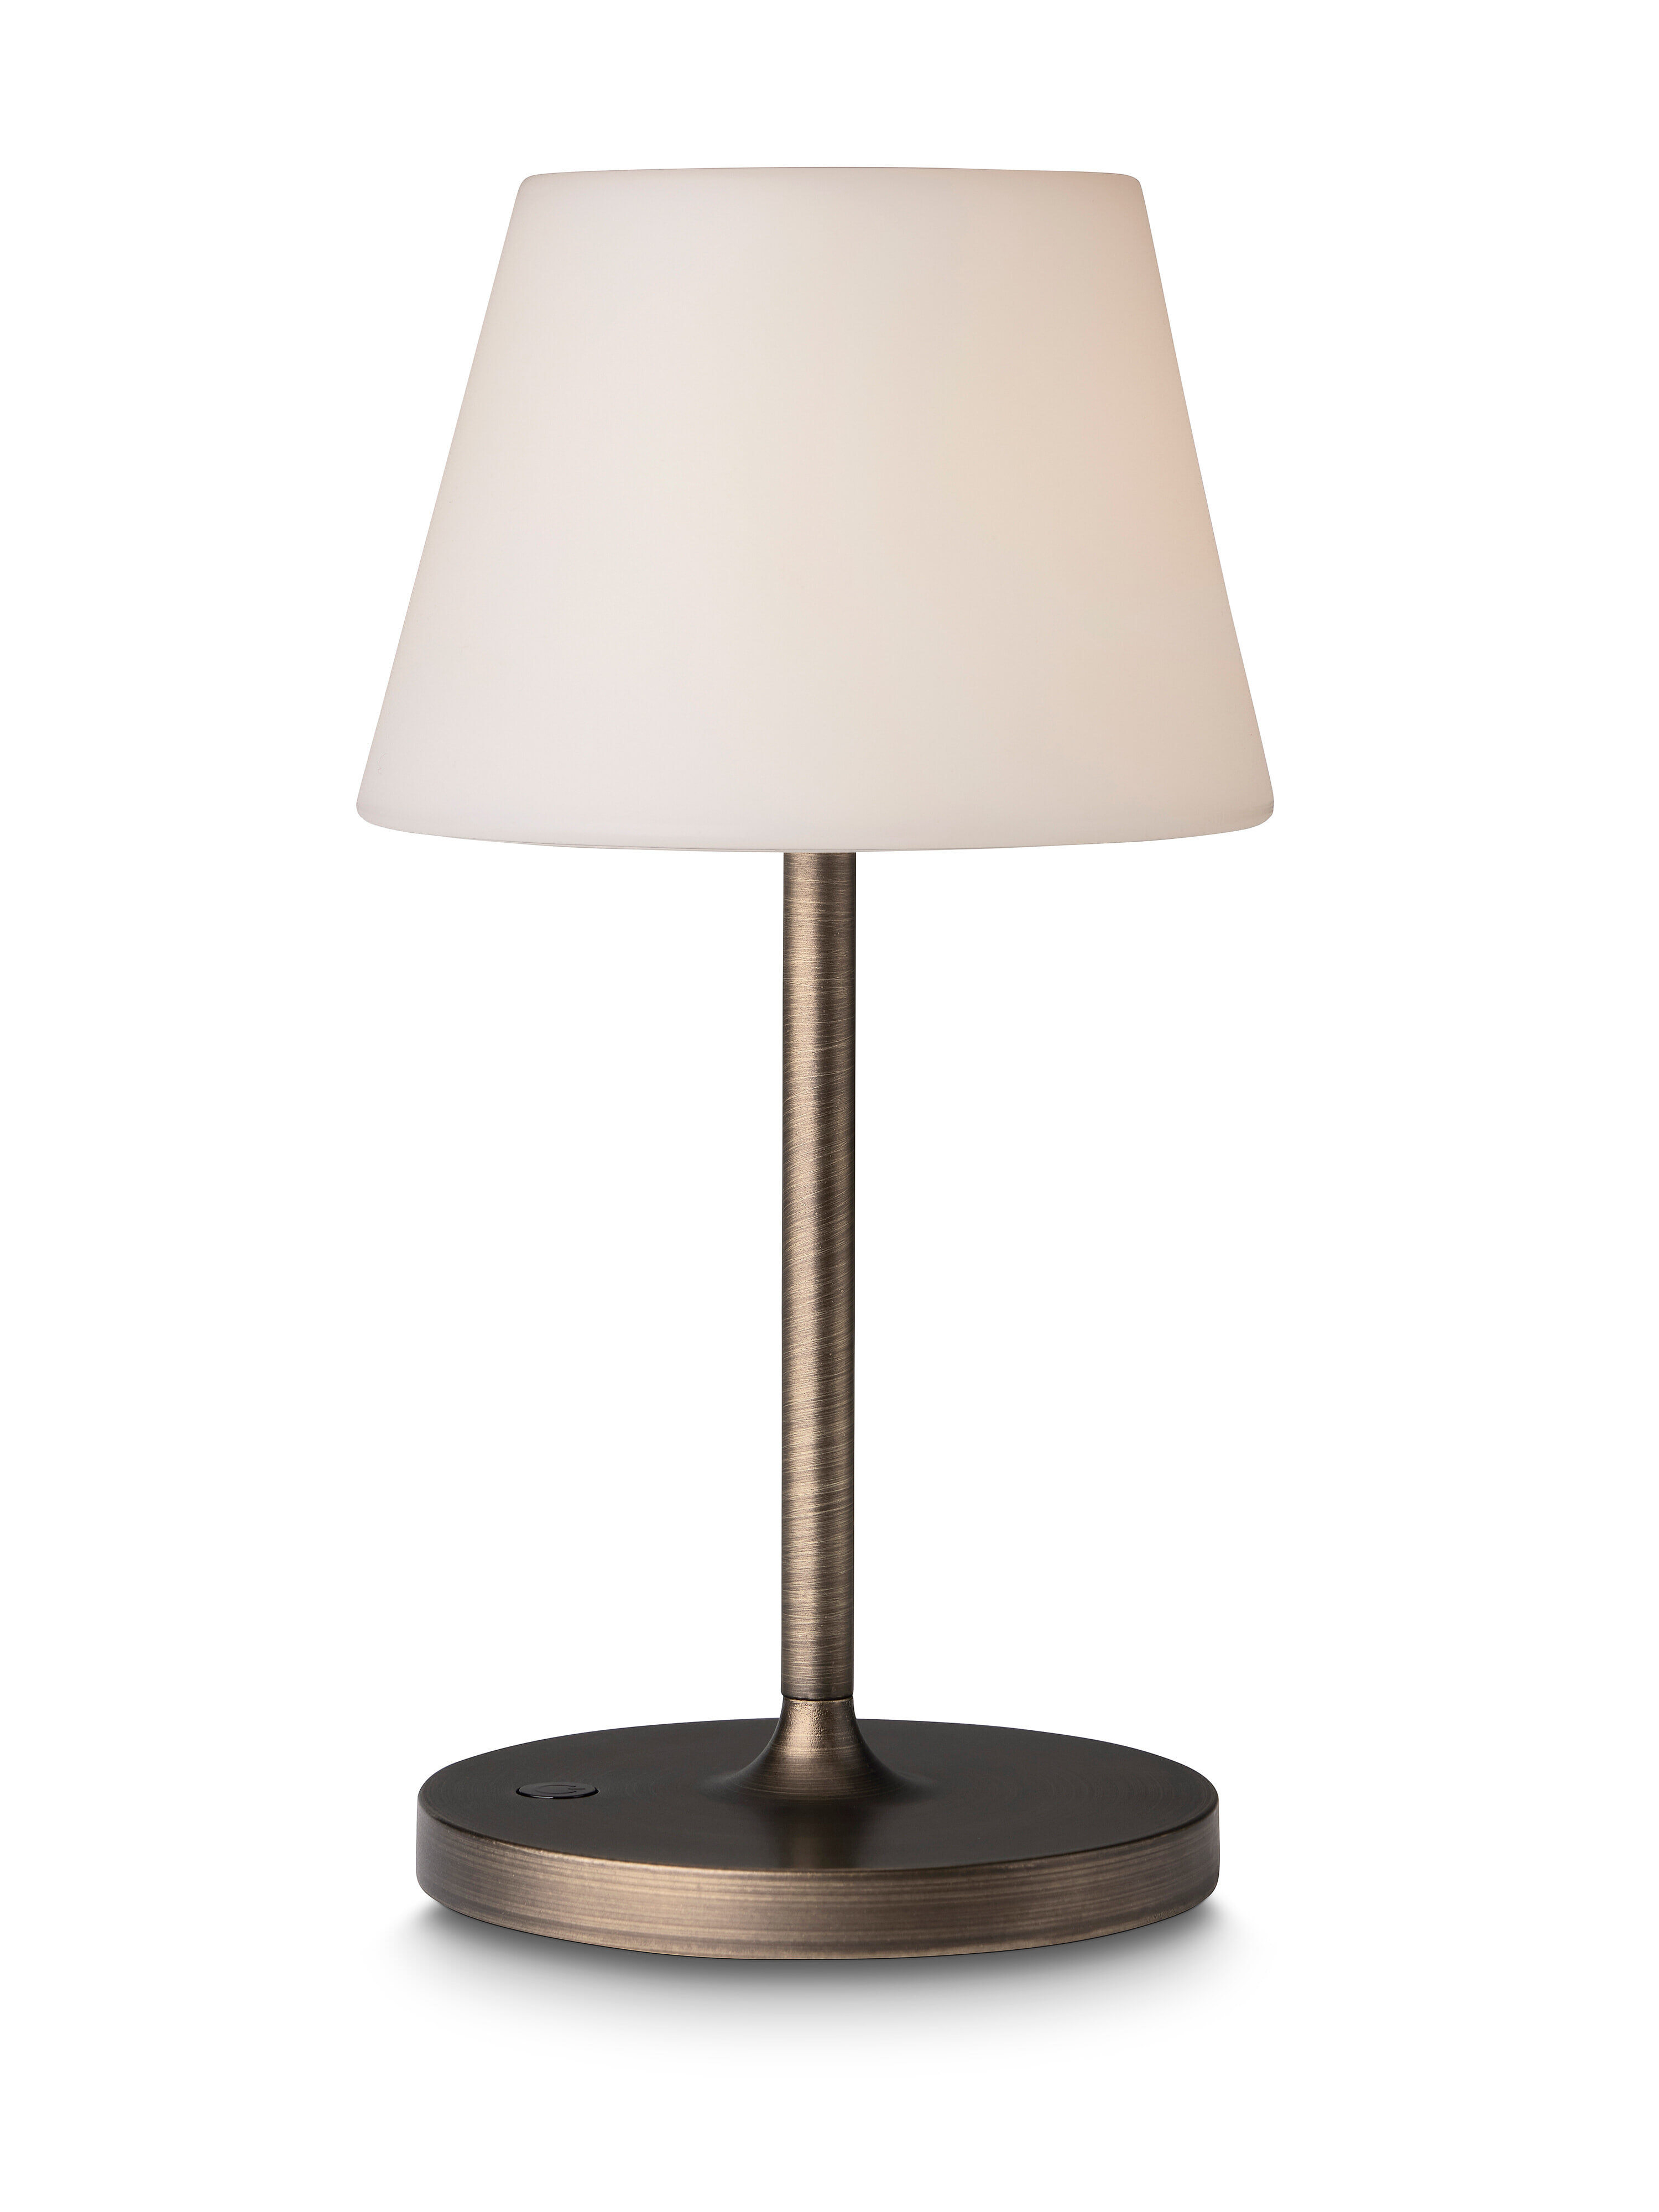 Halo Design Tafellamp 'New Northern' Oplaadbaar, 29cm, kleur Antique Brass